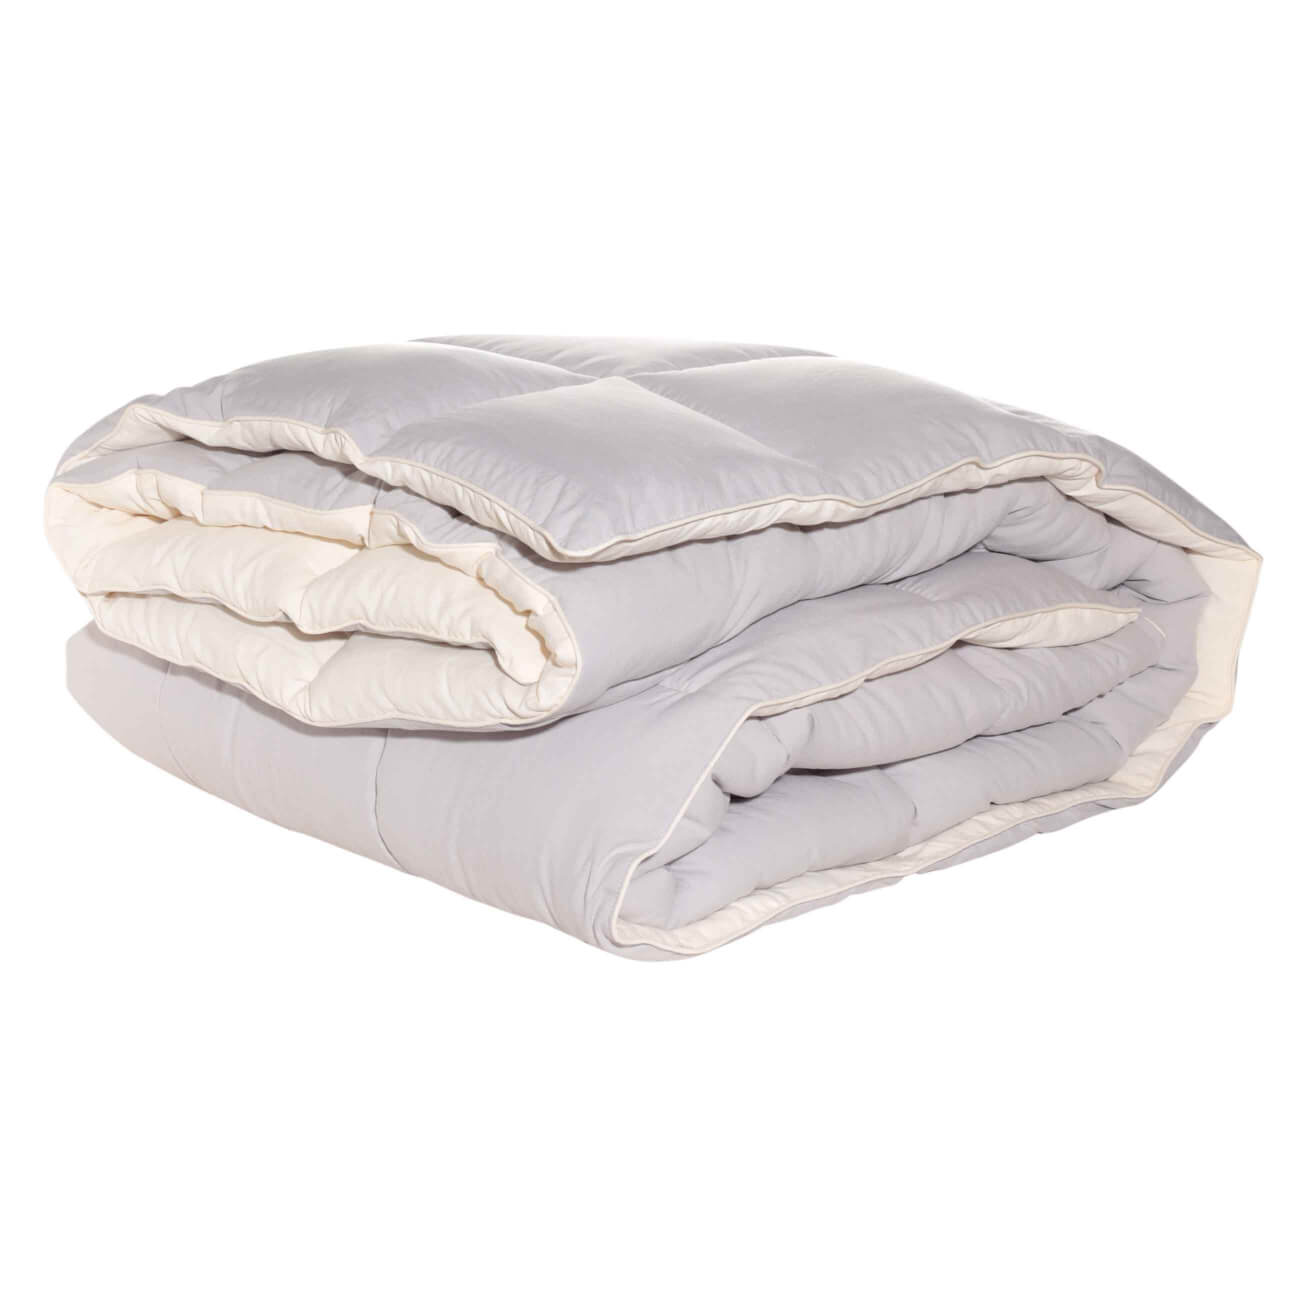 Одеяло, 140х200 см, микрофибра/холлофайбер, бежевое/молочное, Hollow fiber одеяло 140х200 см микрофибра холлофайбер бежевое молочное hollow fiber